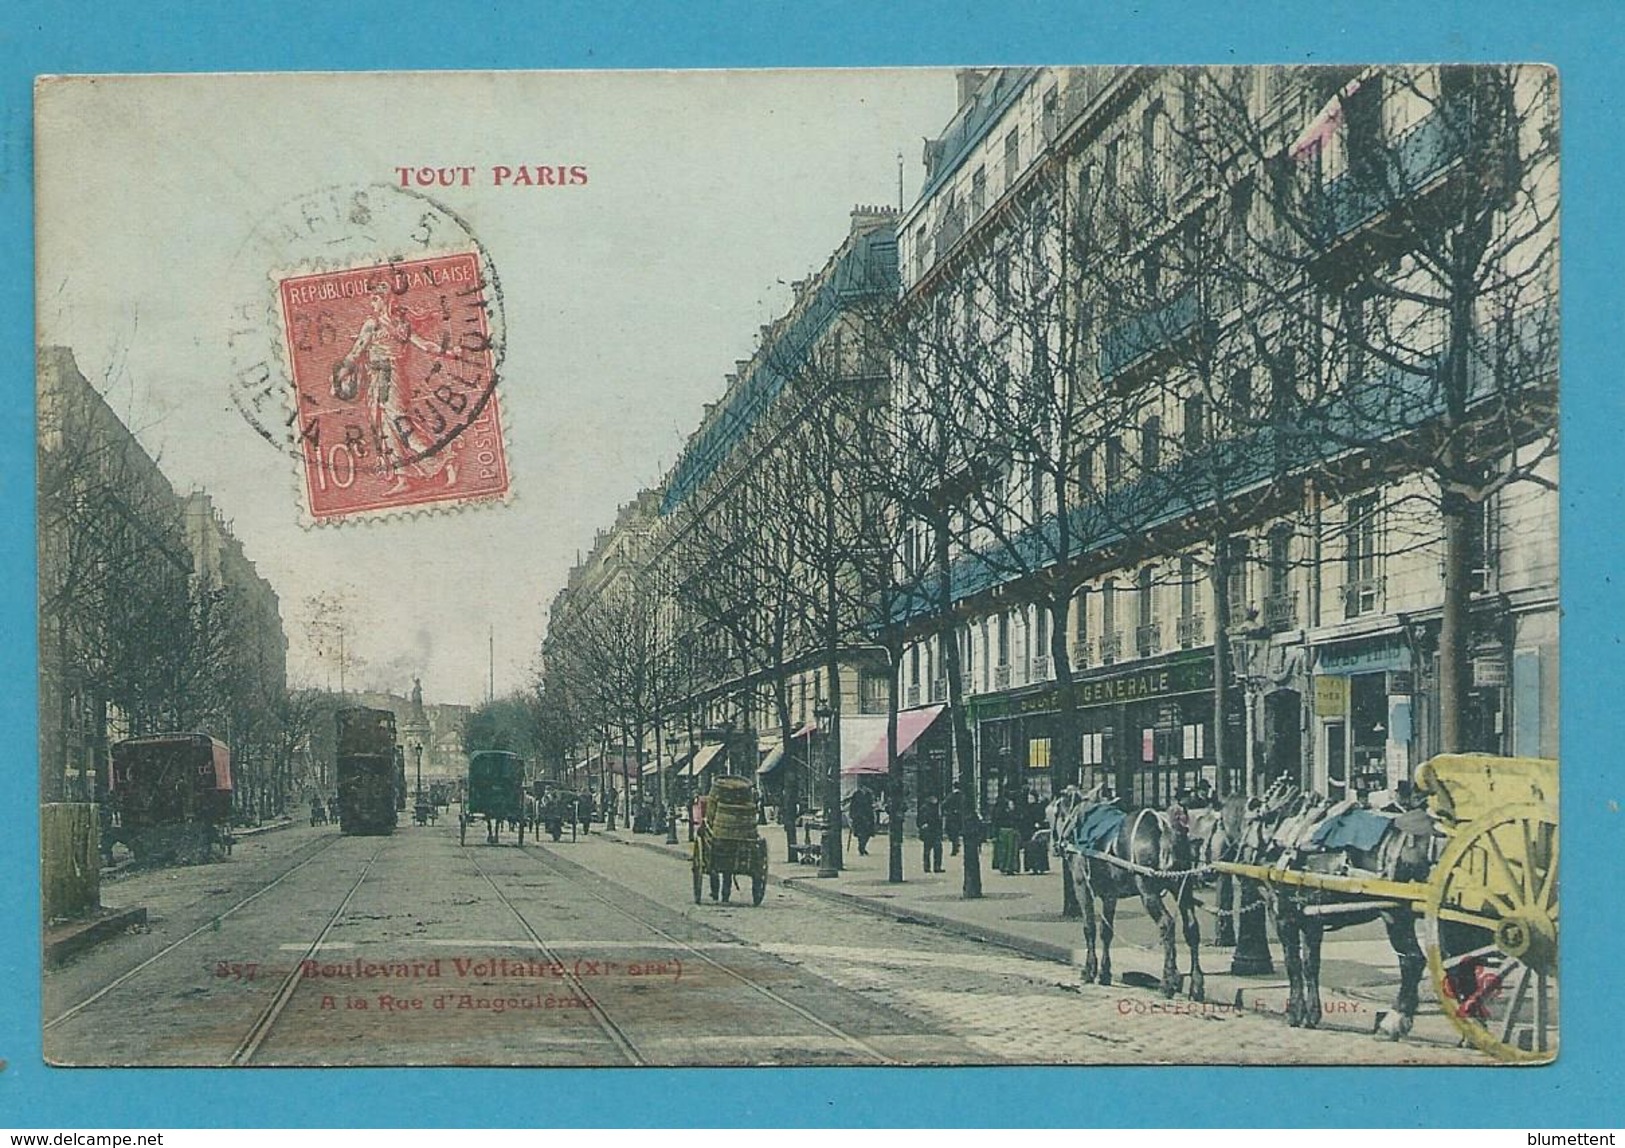 CPA TOUT PARIS 857 - Boulevard Voltaire (XIème Arrt.) Edition FLEURY - Arrondissement: 11